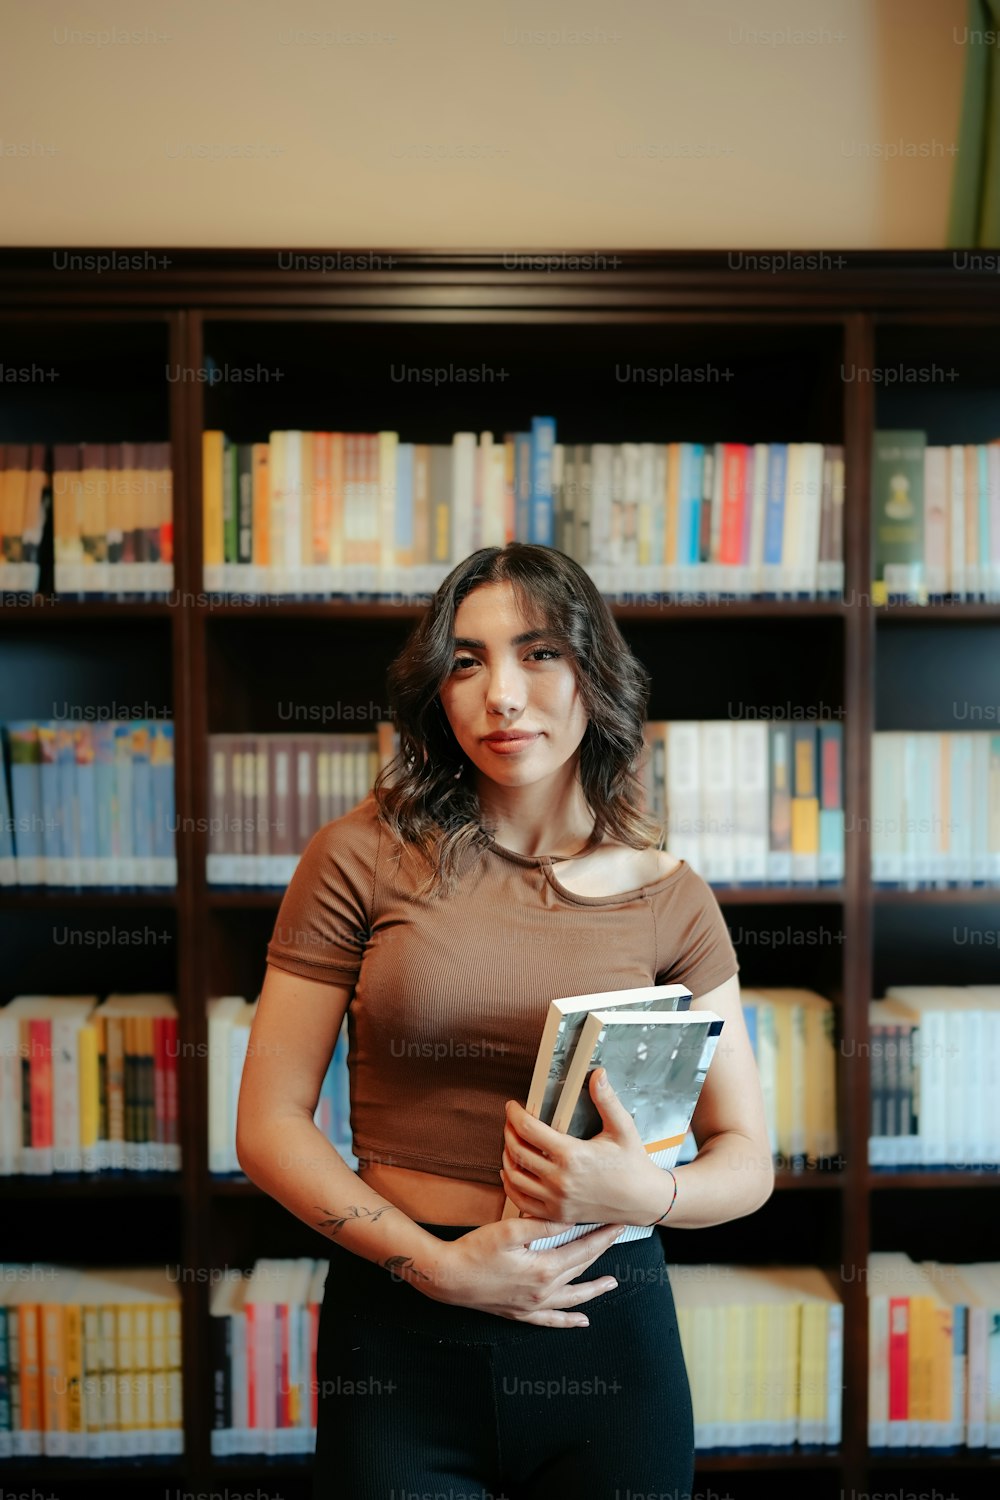 Eine Frau, die vor einem Bücherregal steht und ein Buch hält